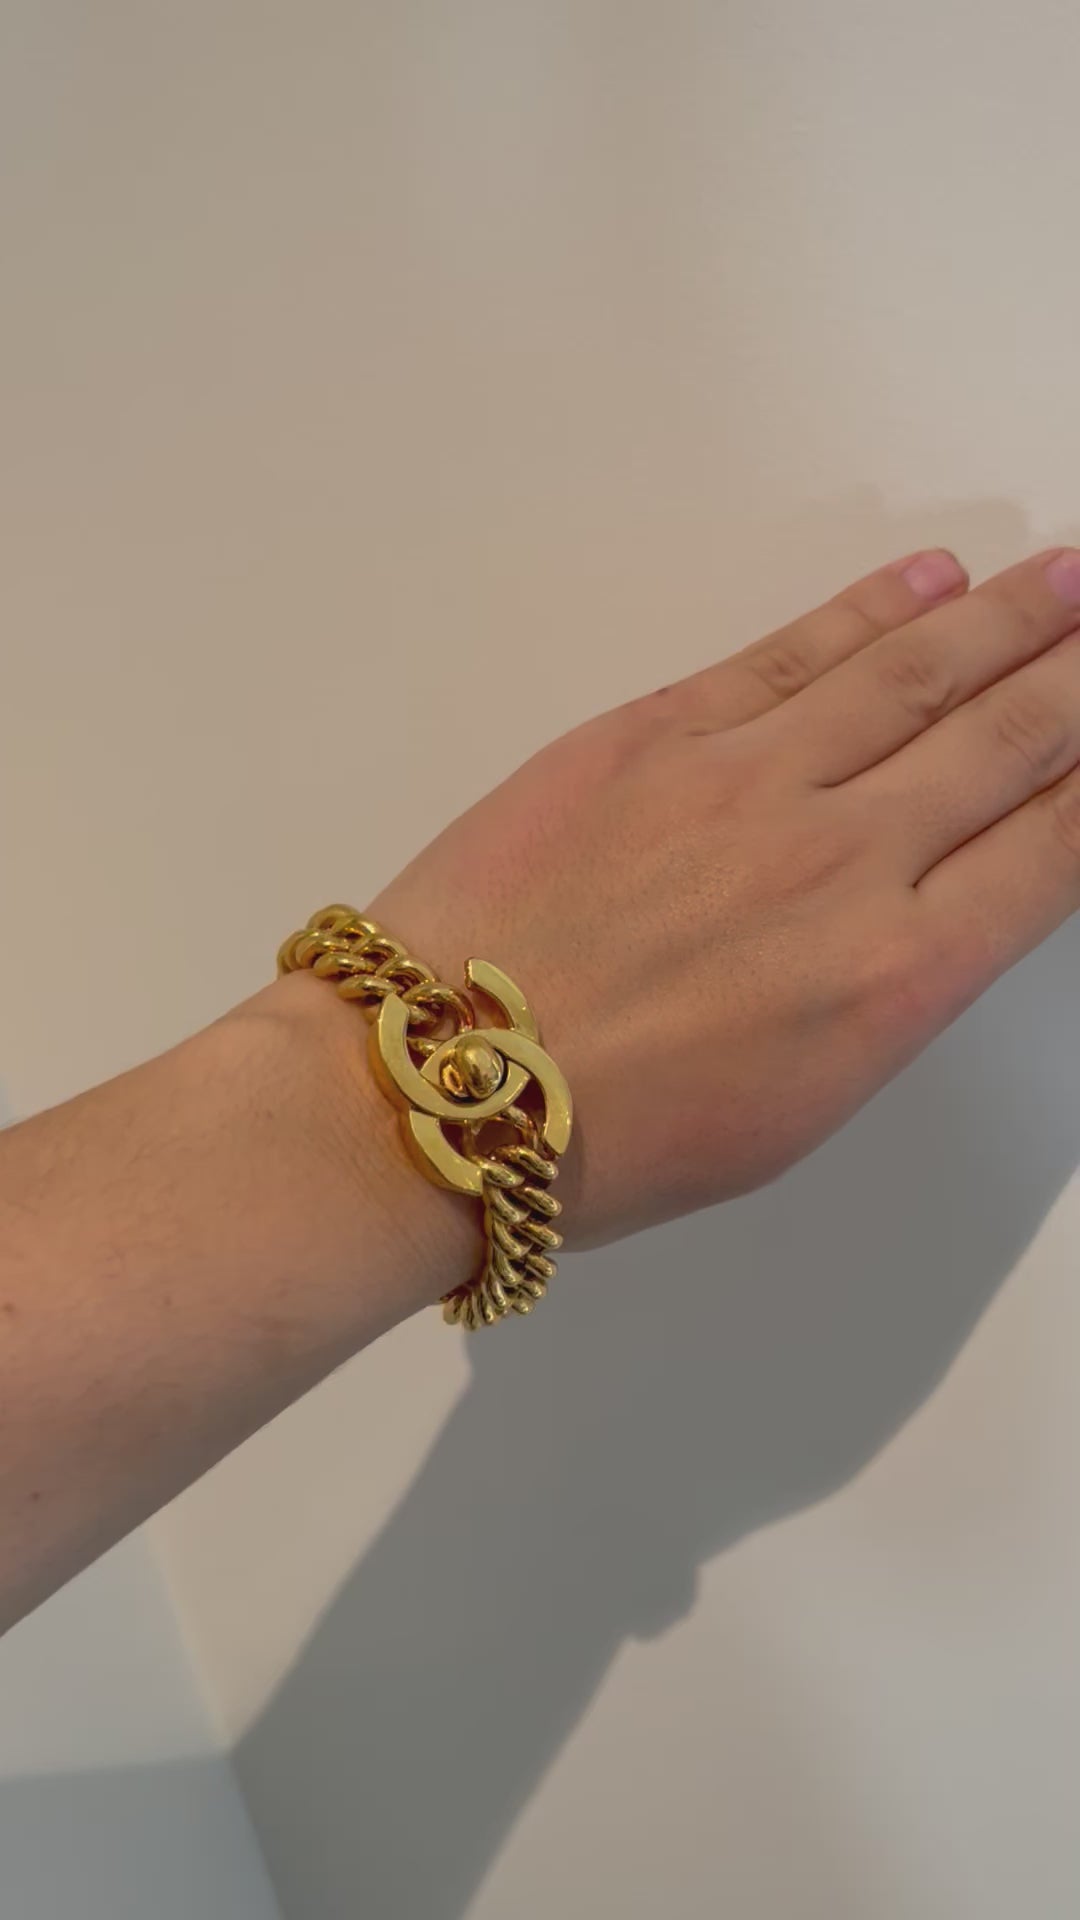 CHANEL gold turnlock bracelet vintage